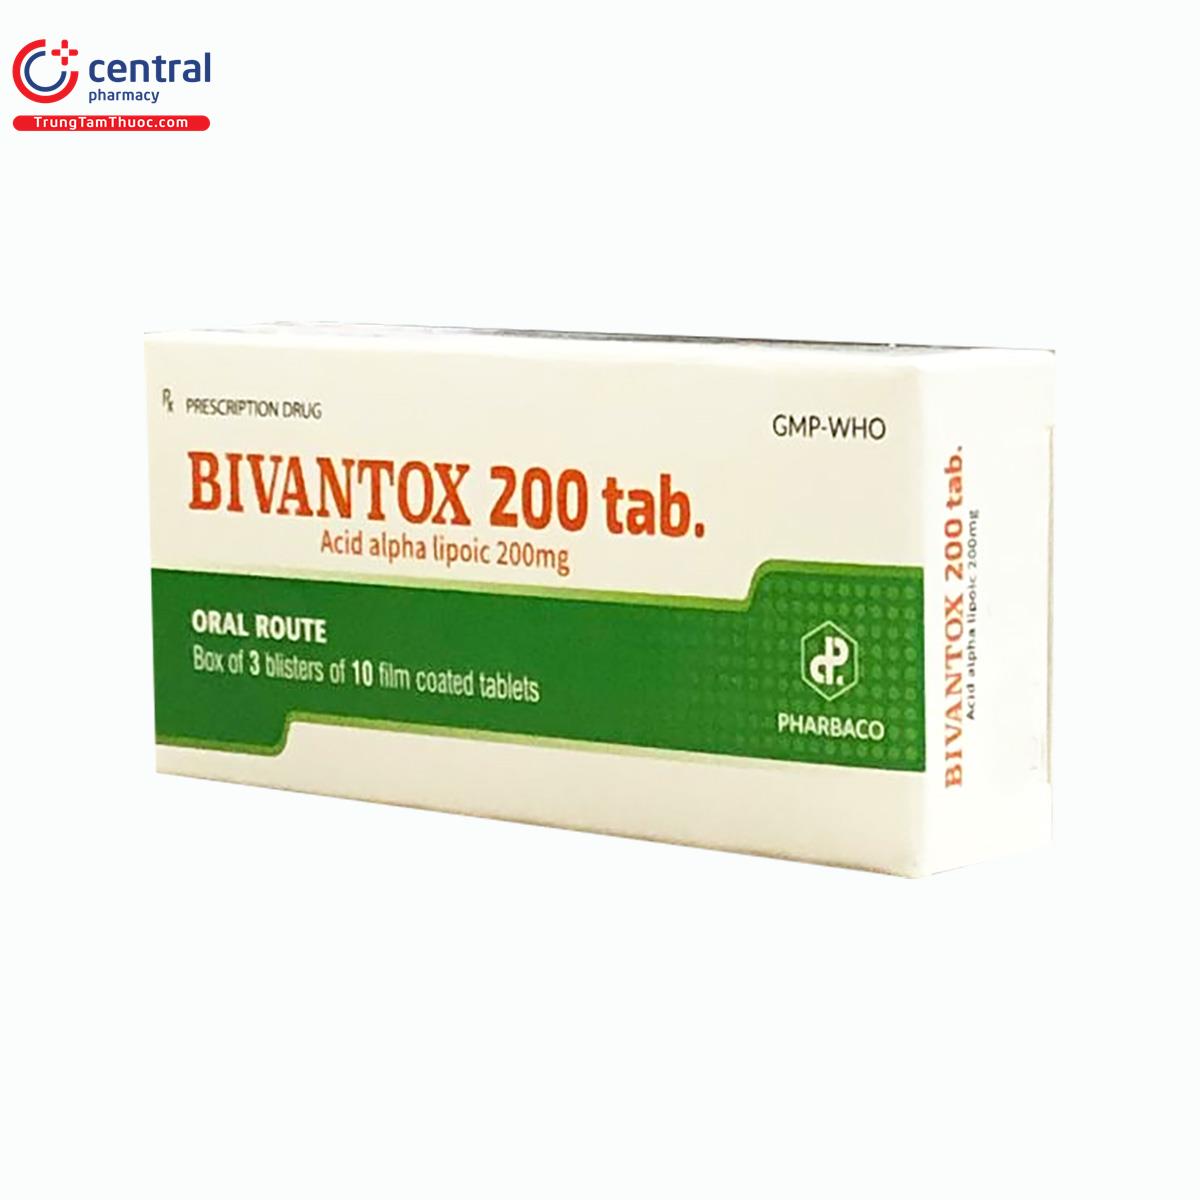 bivantox 200 tab 5 J3444